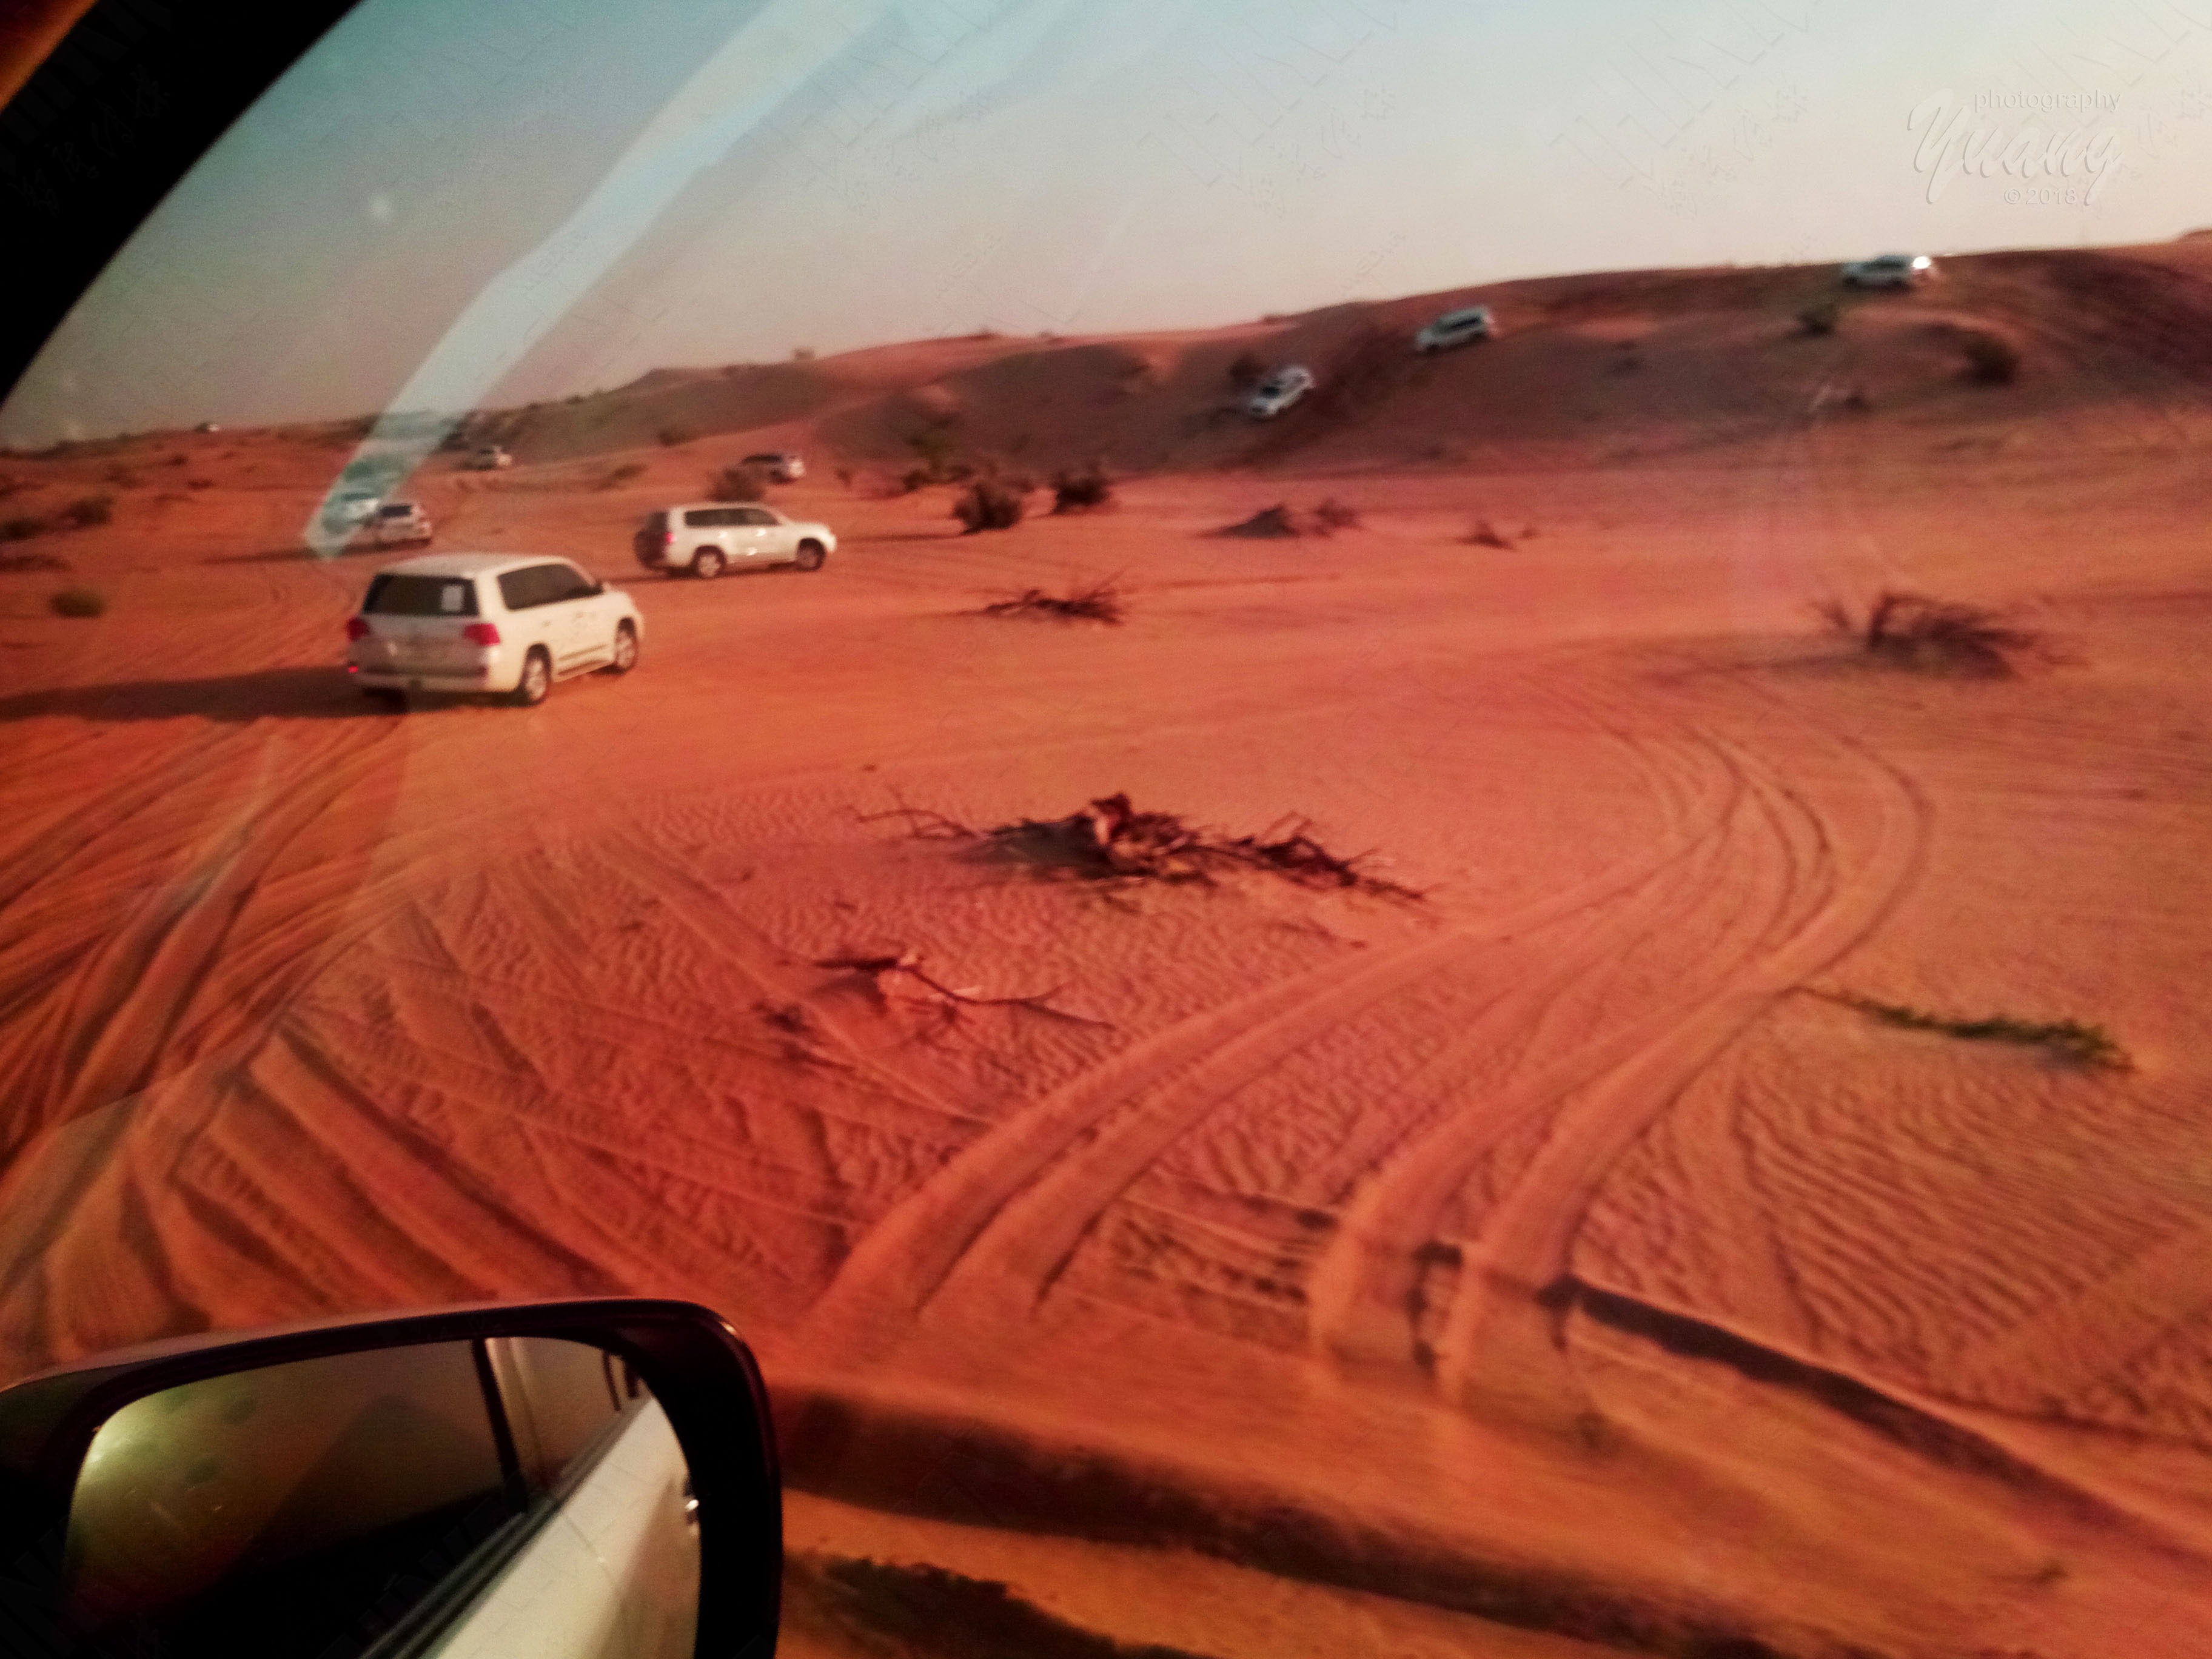 迪拜热气球沙漠日出精美 含早餐猎鹰表演路虎体验中文服务（可搭配冲沙哦）,马蜂窝自由行 - 马蜂窝自由行